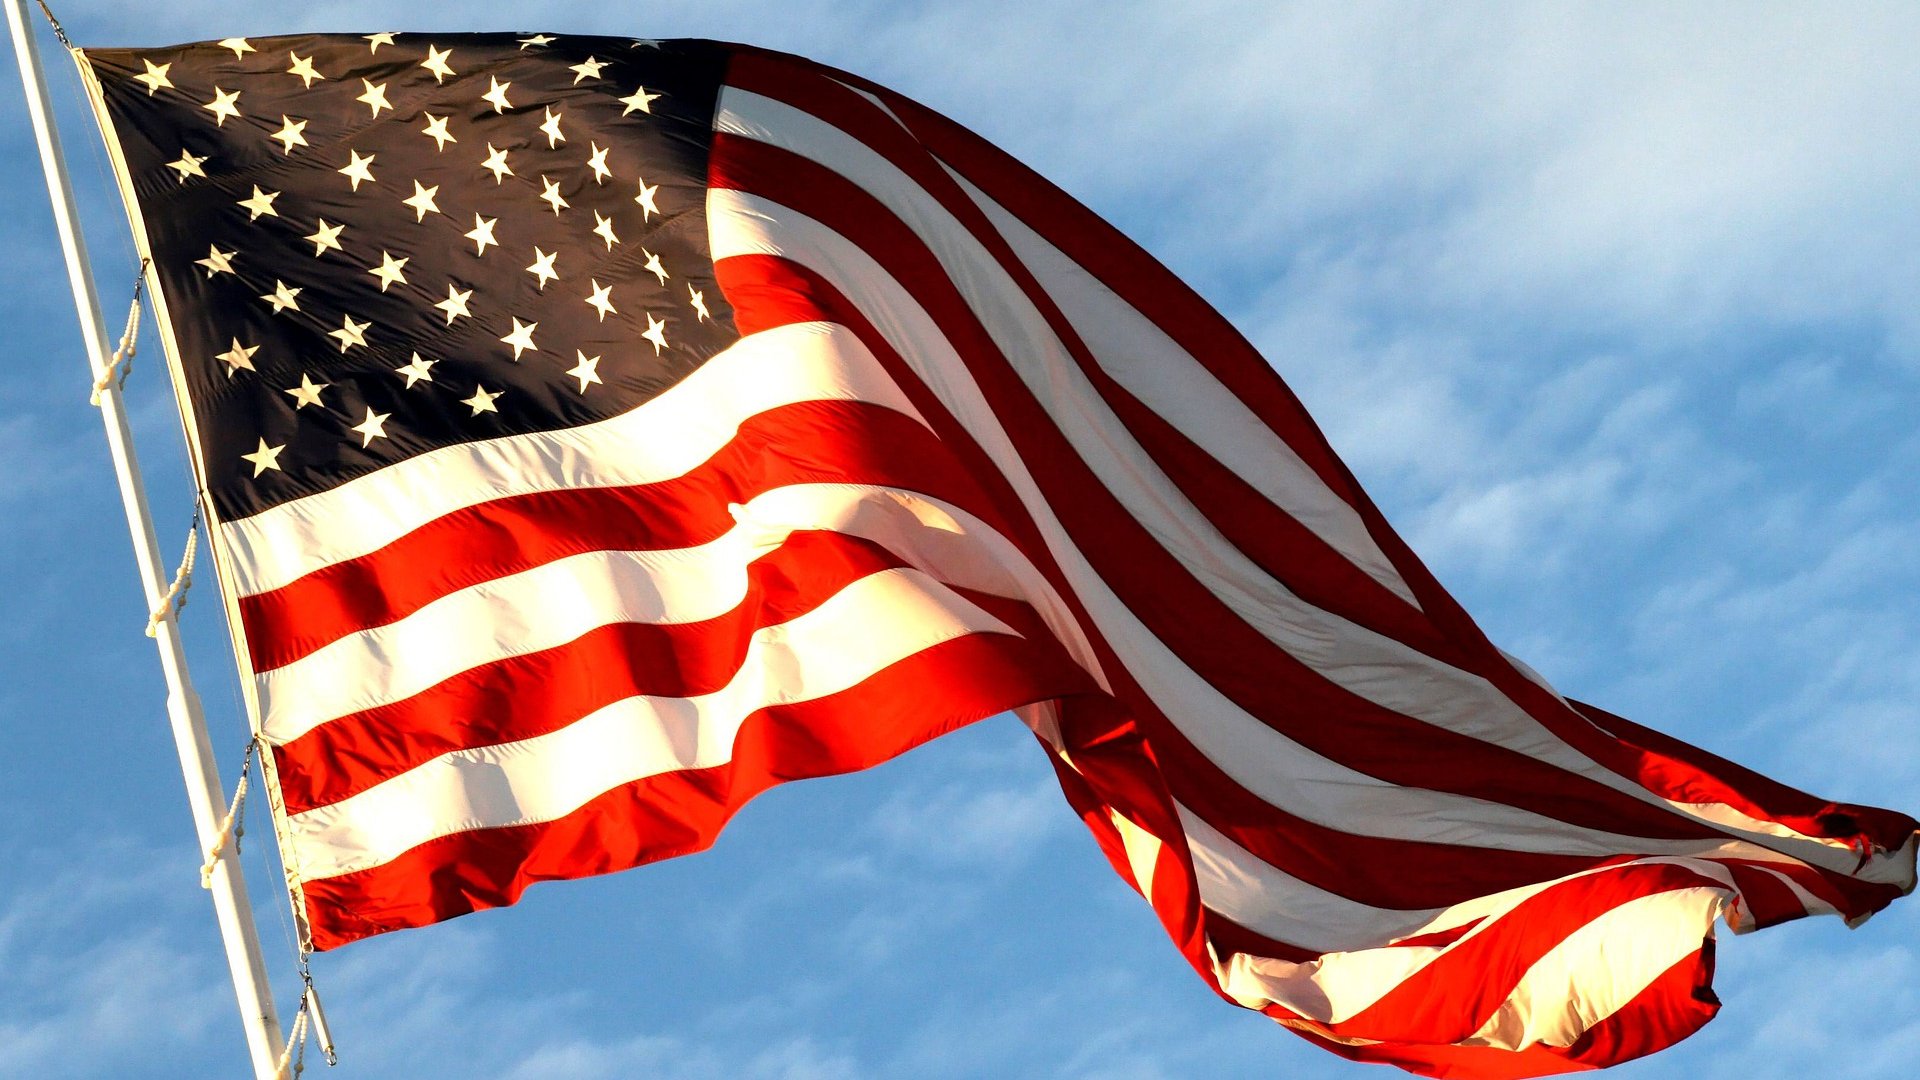 Bandeira dos Estados Unidos sendo mexida com o vento. Está pendurada em uma haste e o céu está ensolarado